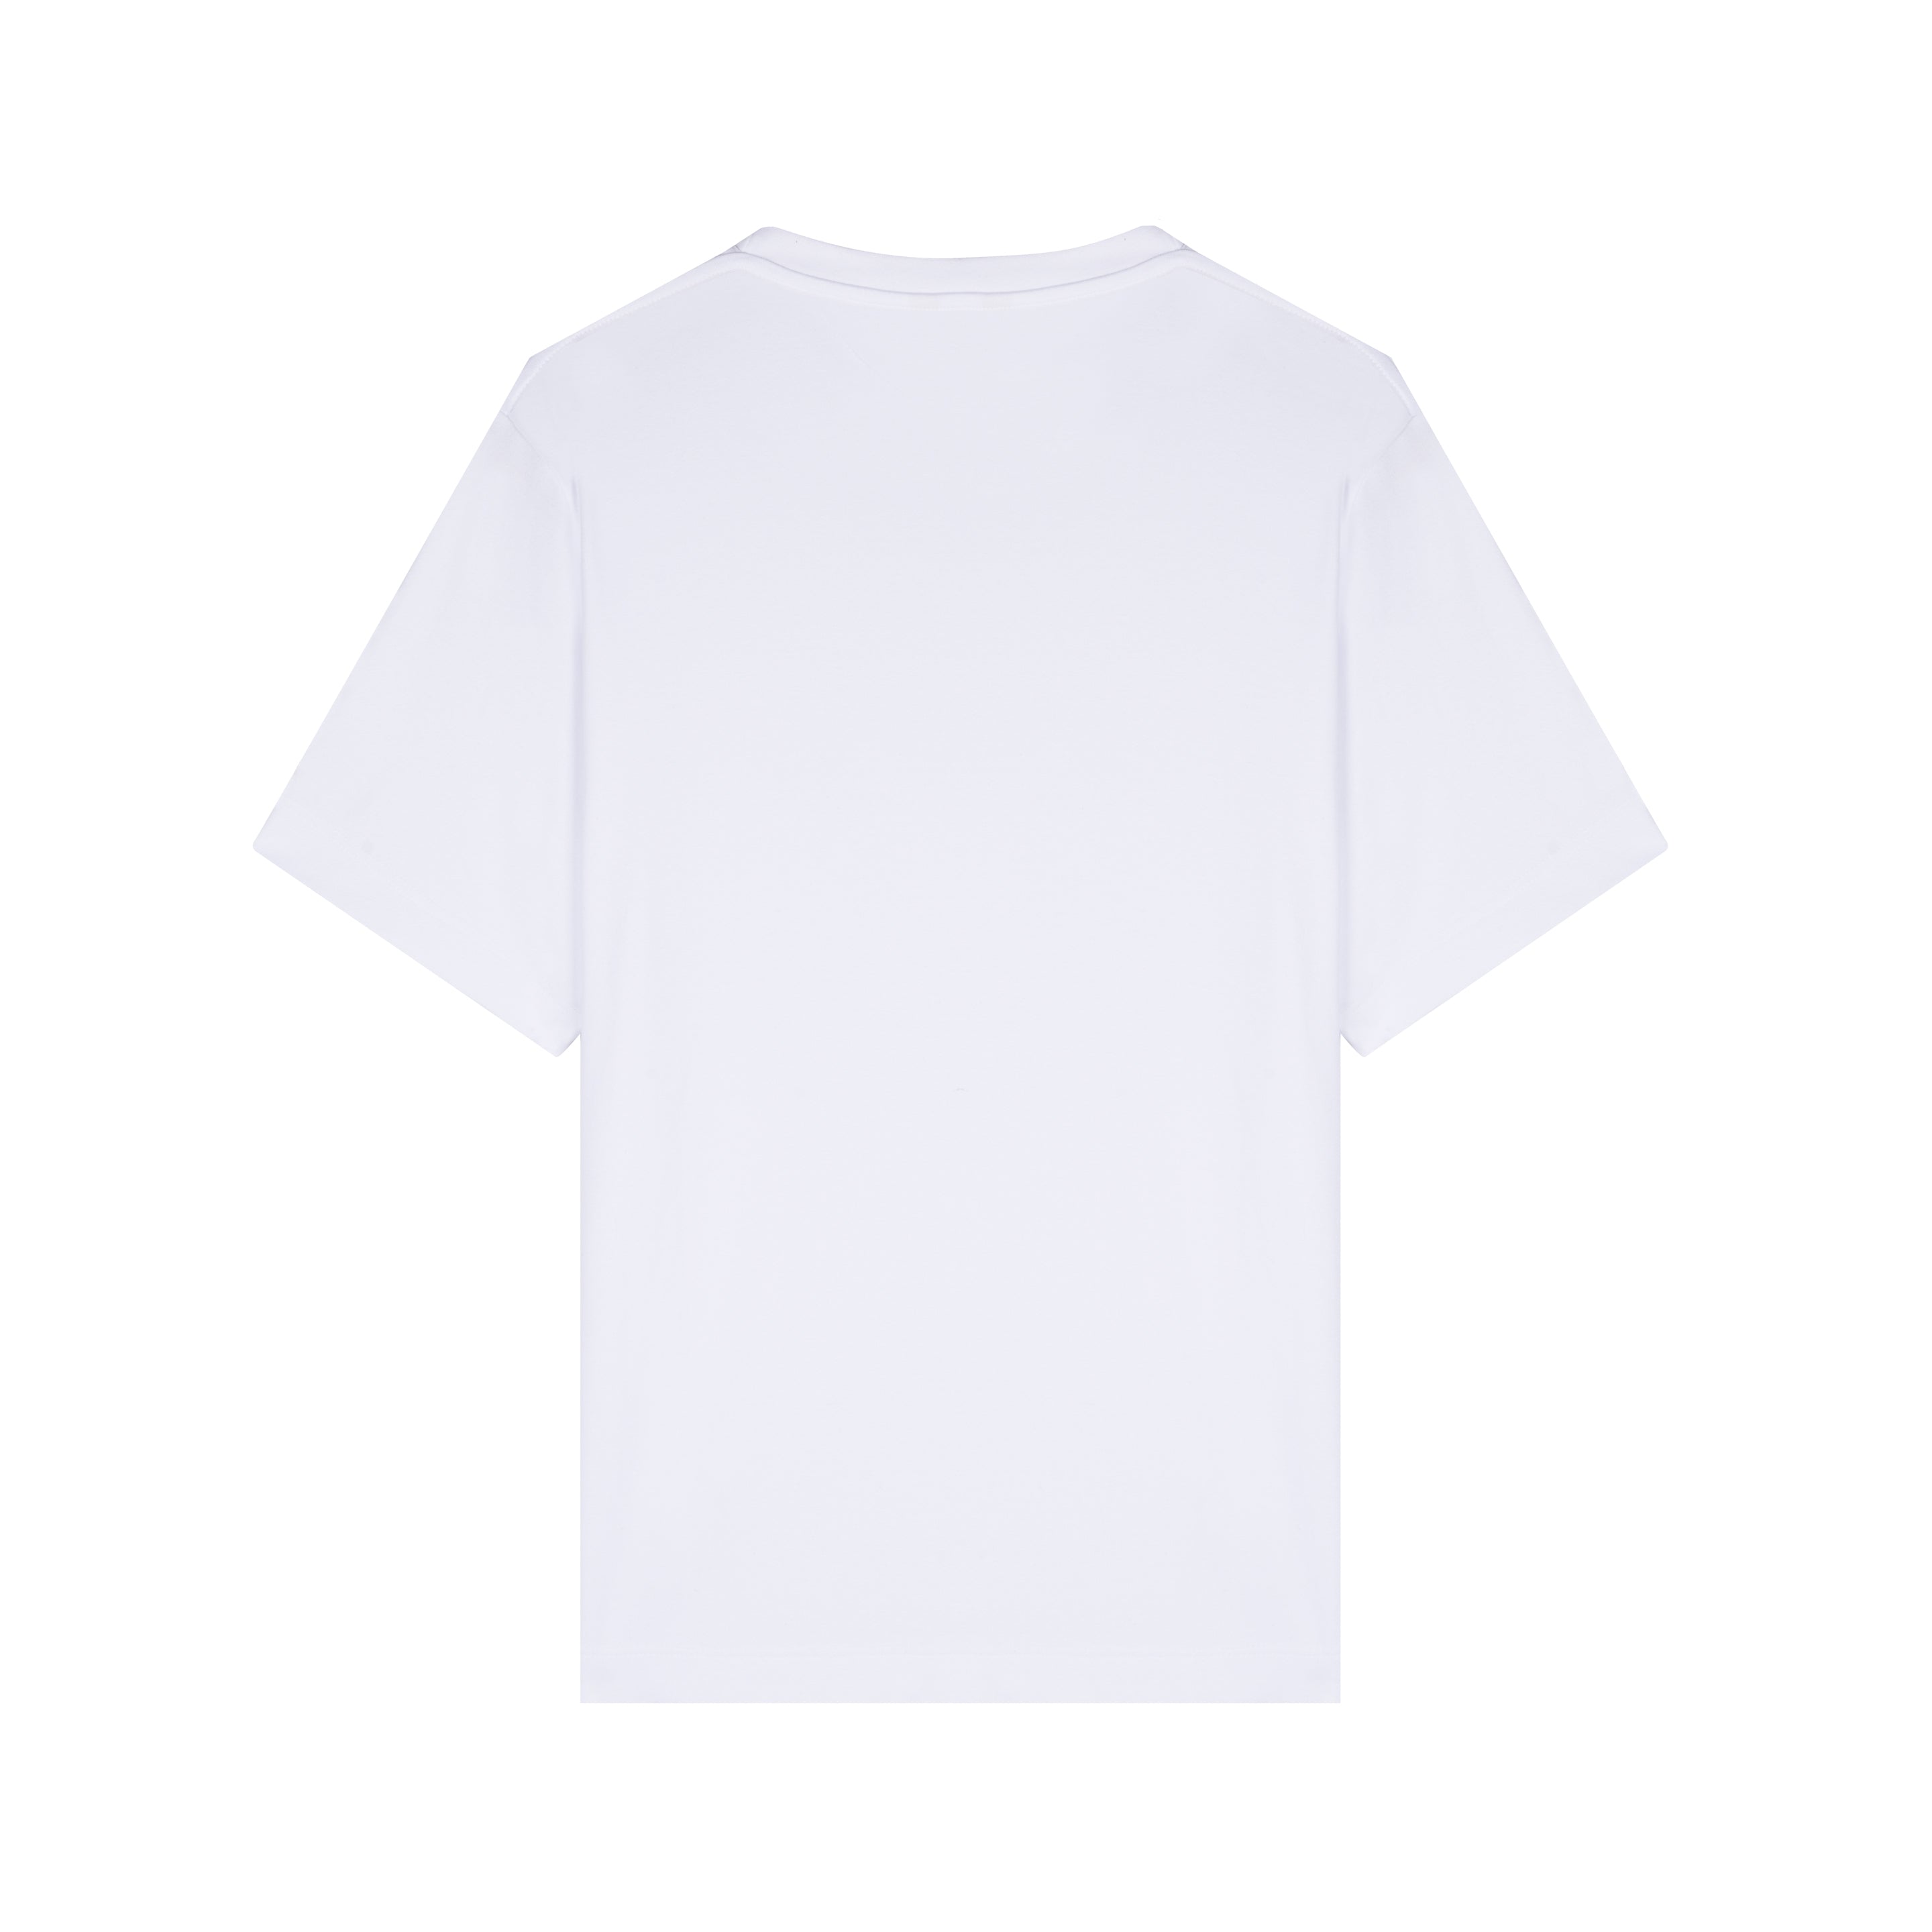 Tee-Shirt Homme Coupe Basique 100% Coton À Personnaliser